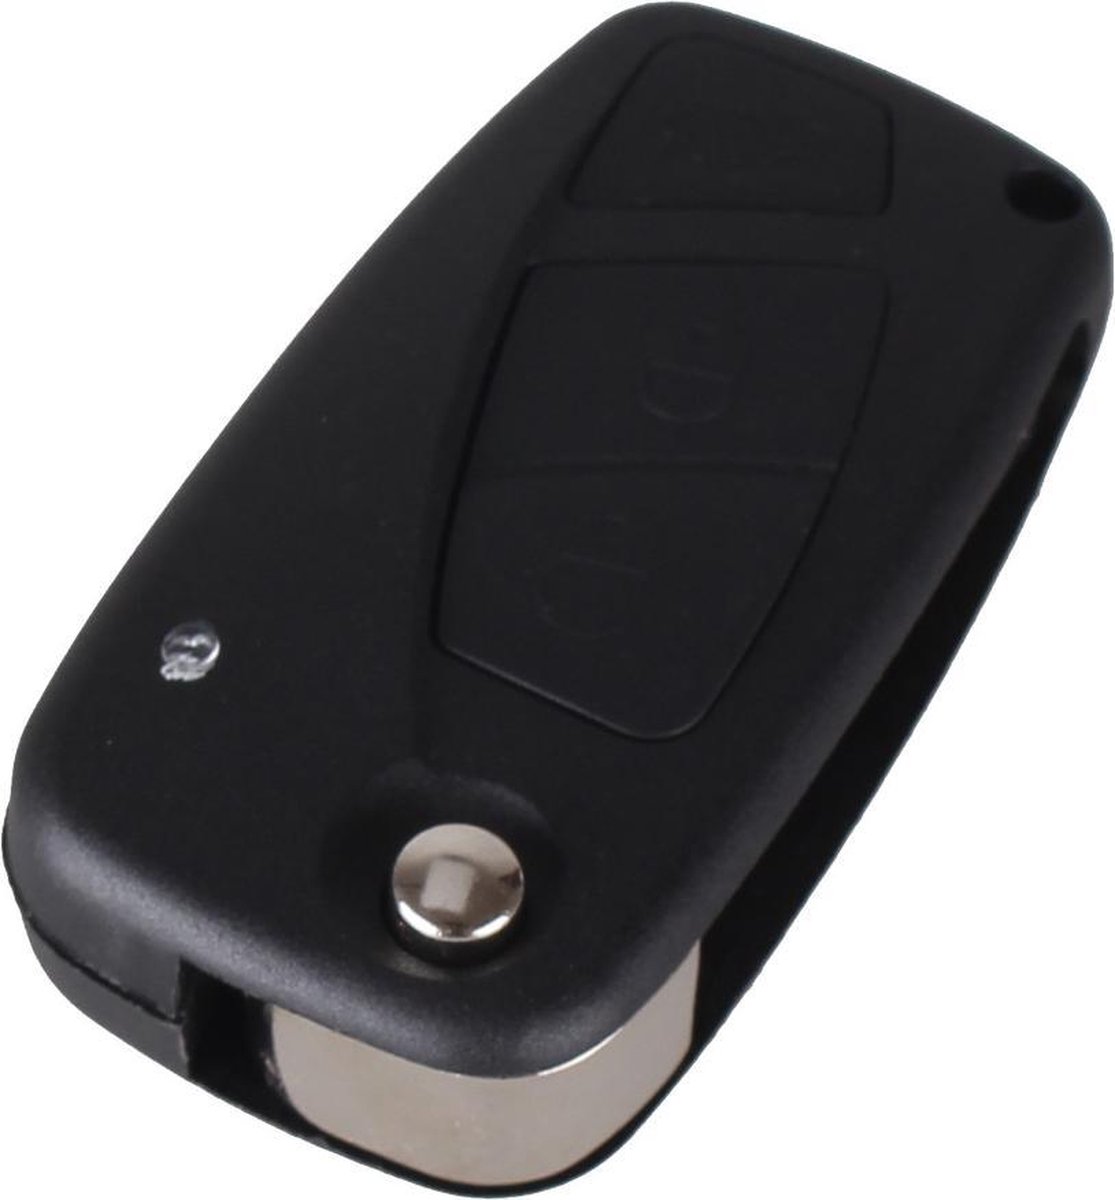 Clé de voiture 3 boutons noire SIP22ERS8 adaptée pour clé Fiat 500 / Panda  / Idee /